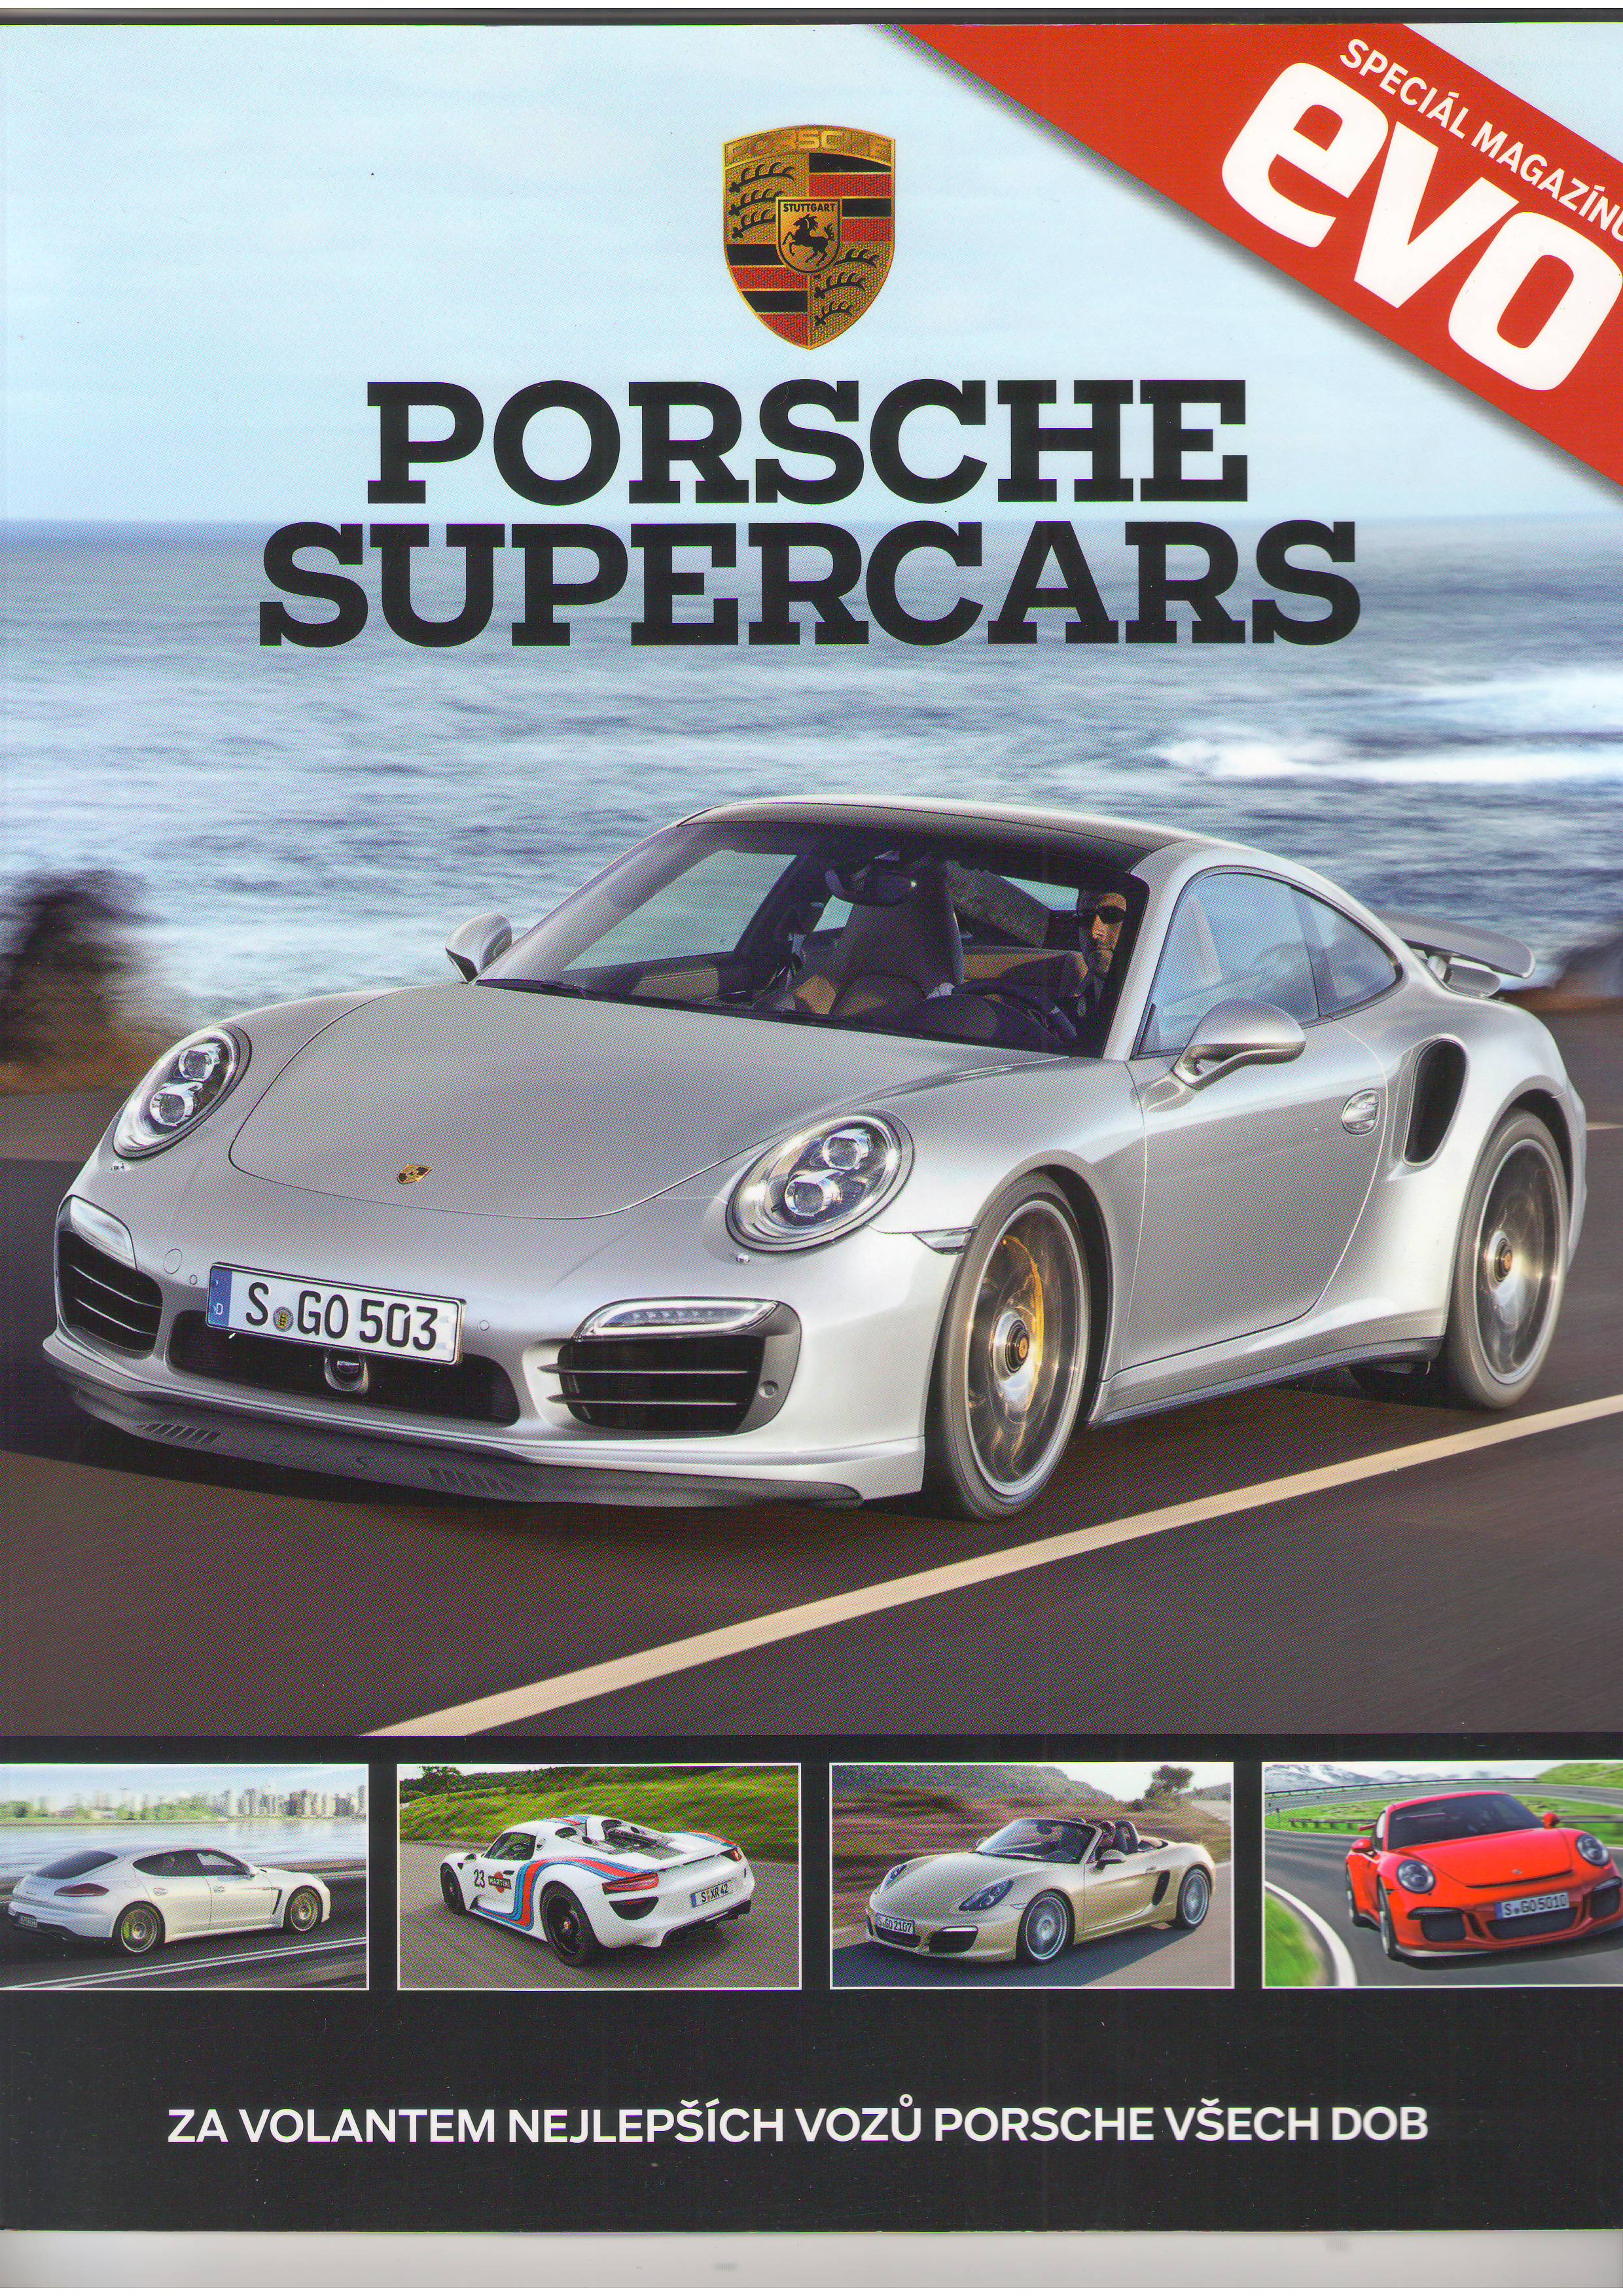 13 evo Porsche Supercars 2013 199 Kč